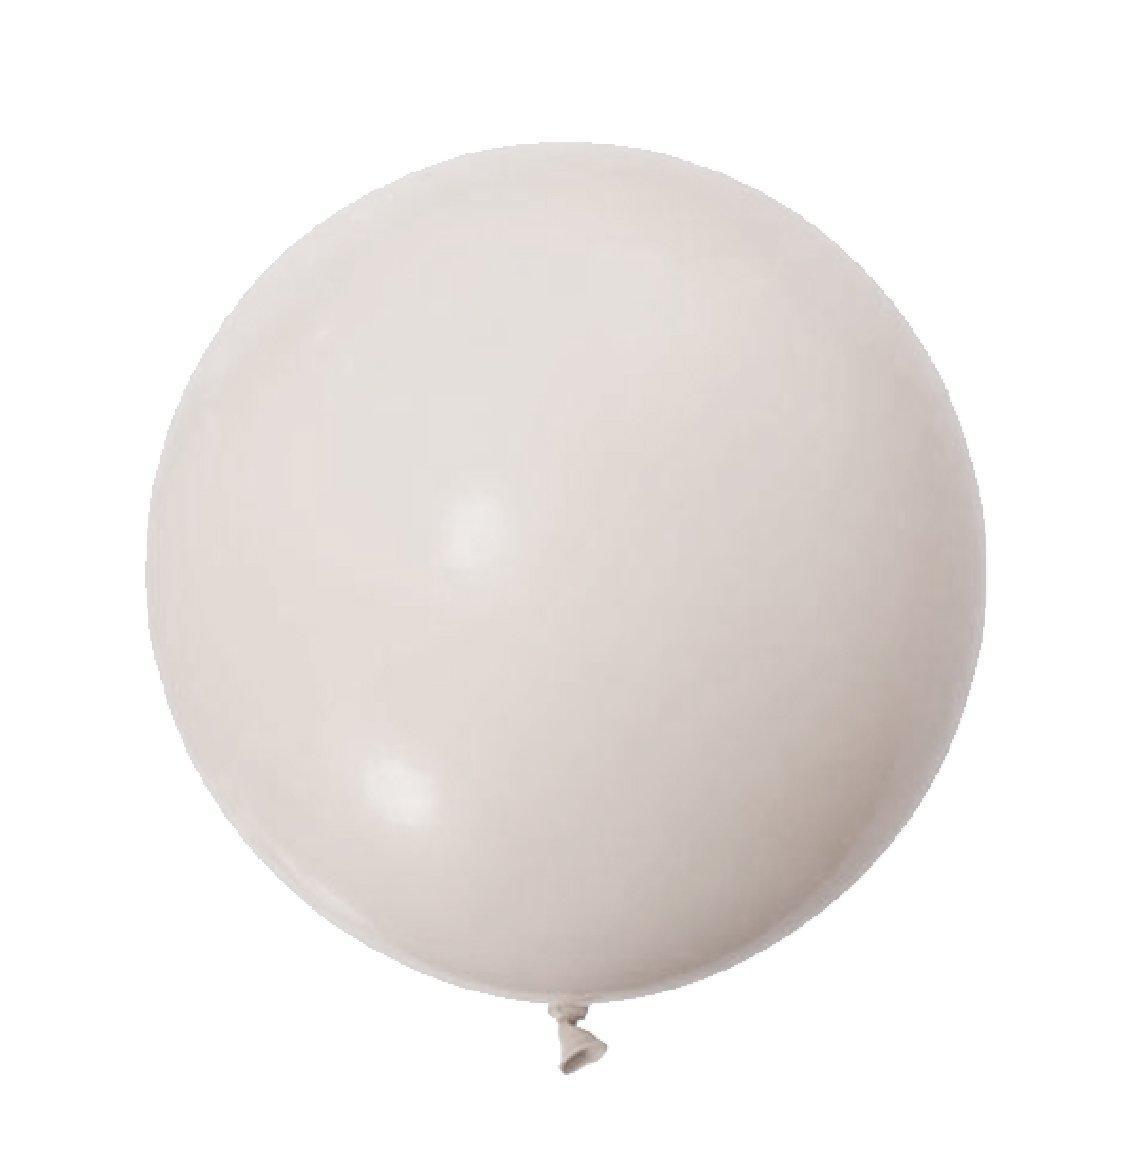 Sempertex White Sand Latex Balloons Sempertex